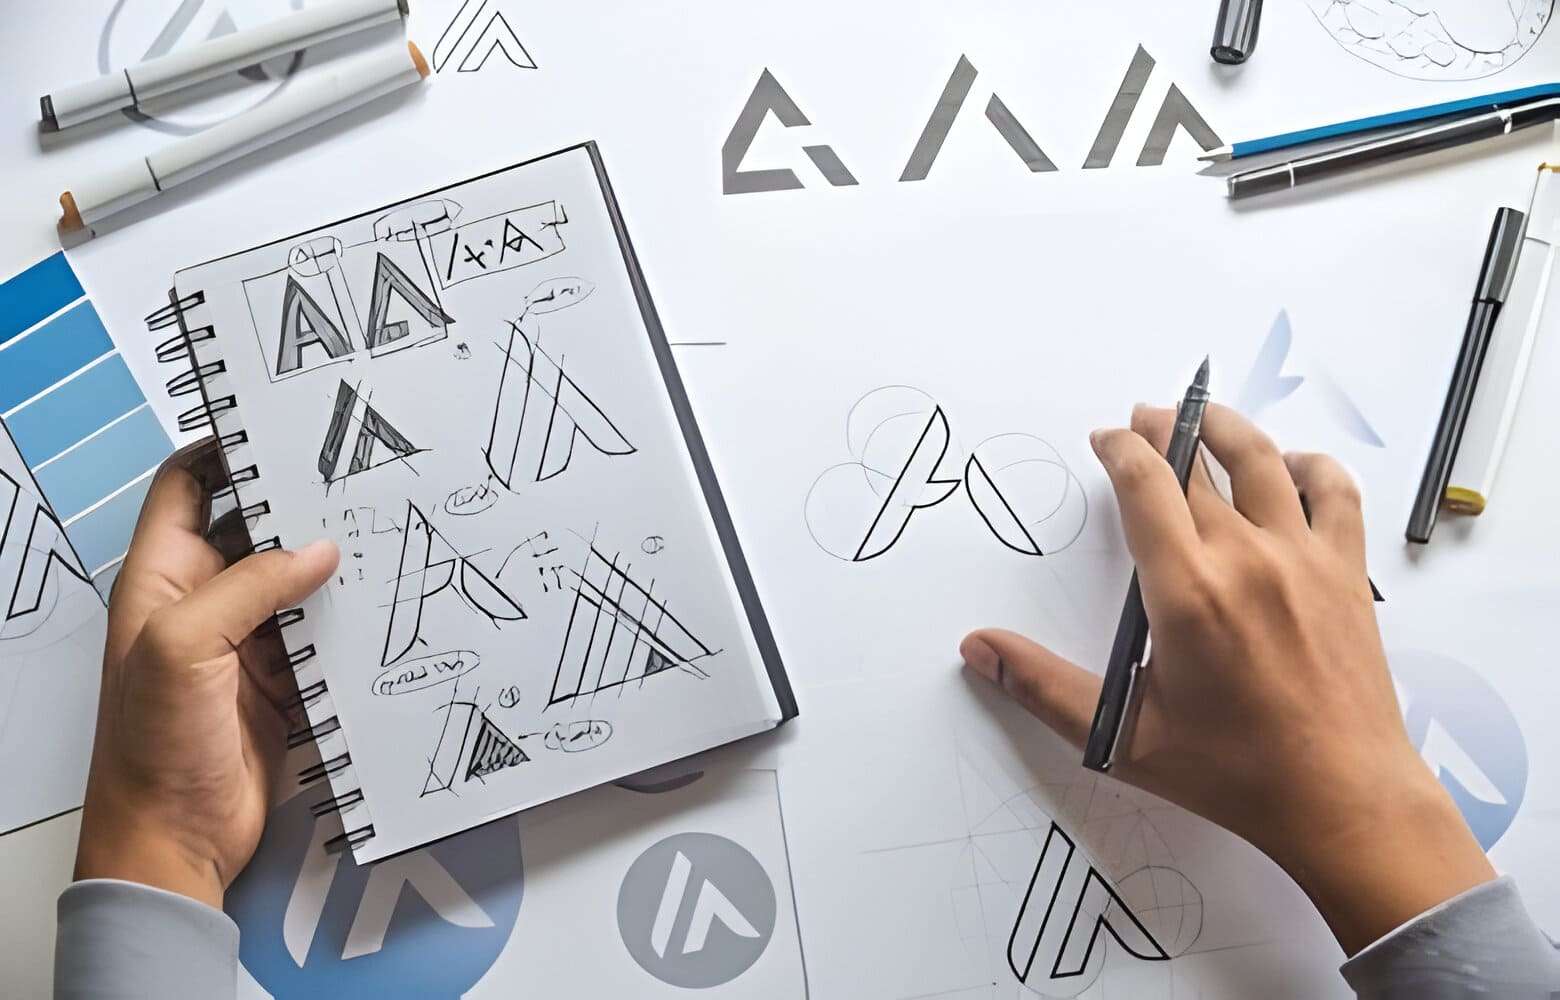 Monogram Logo Design